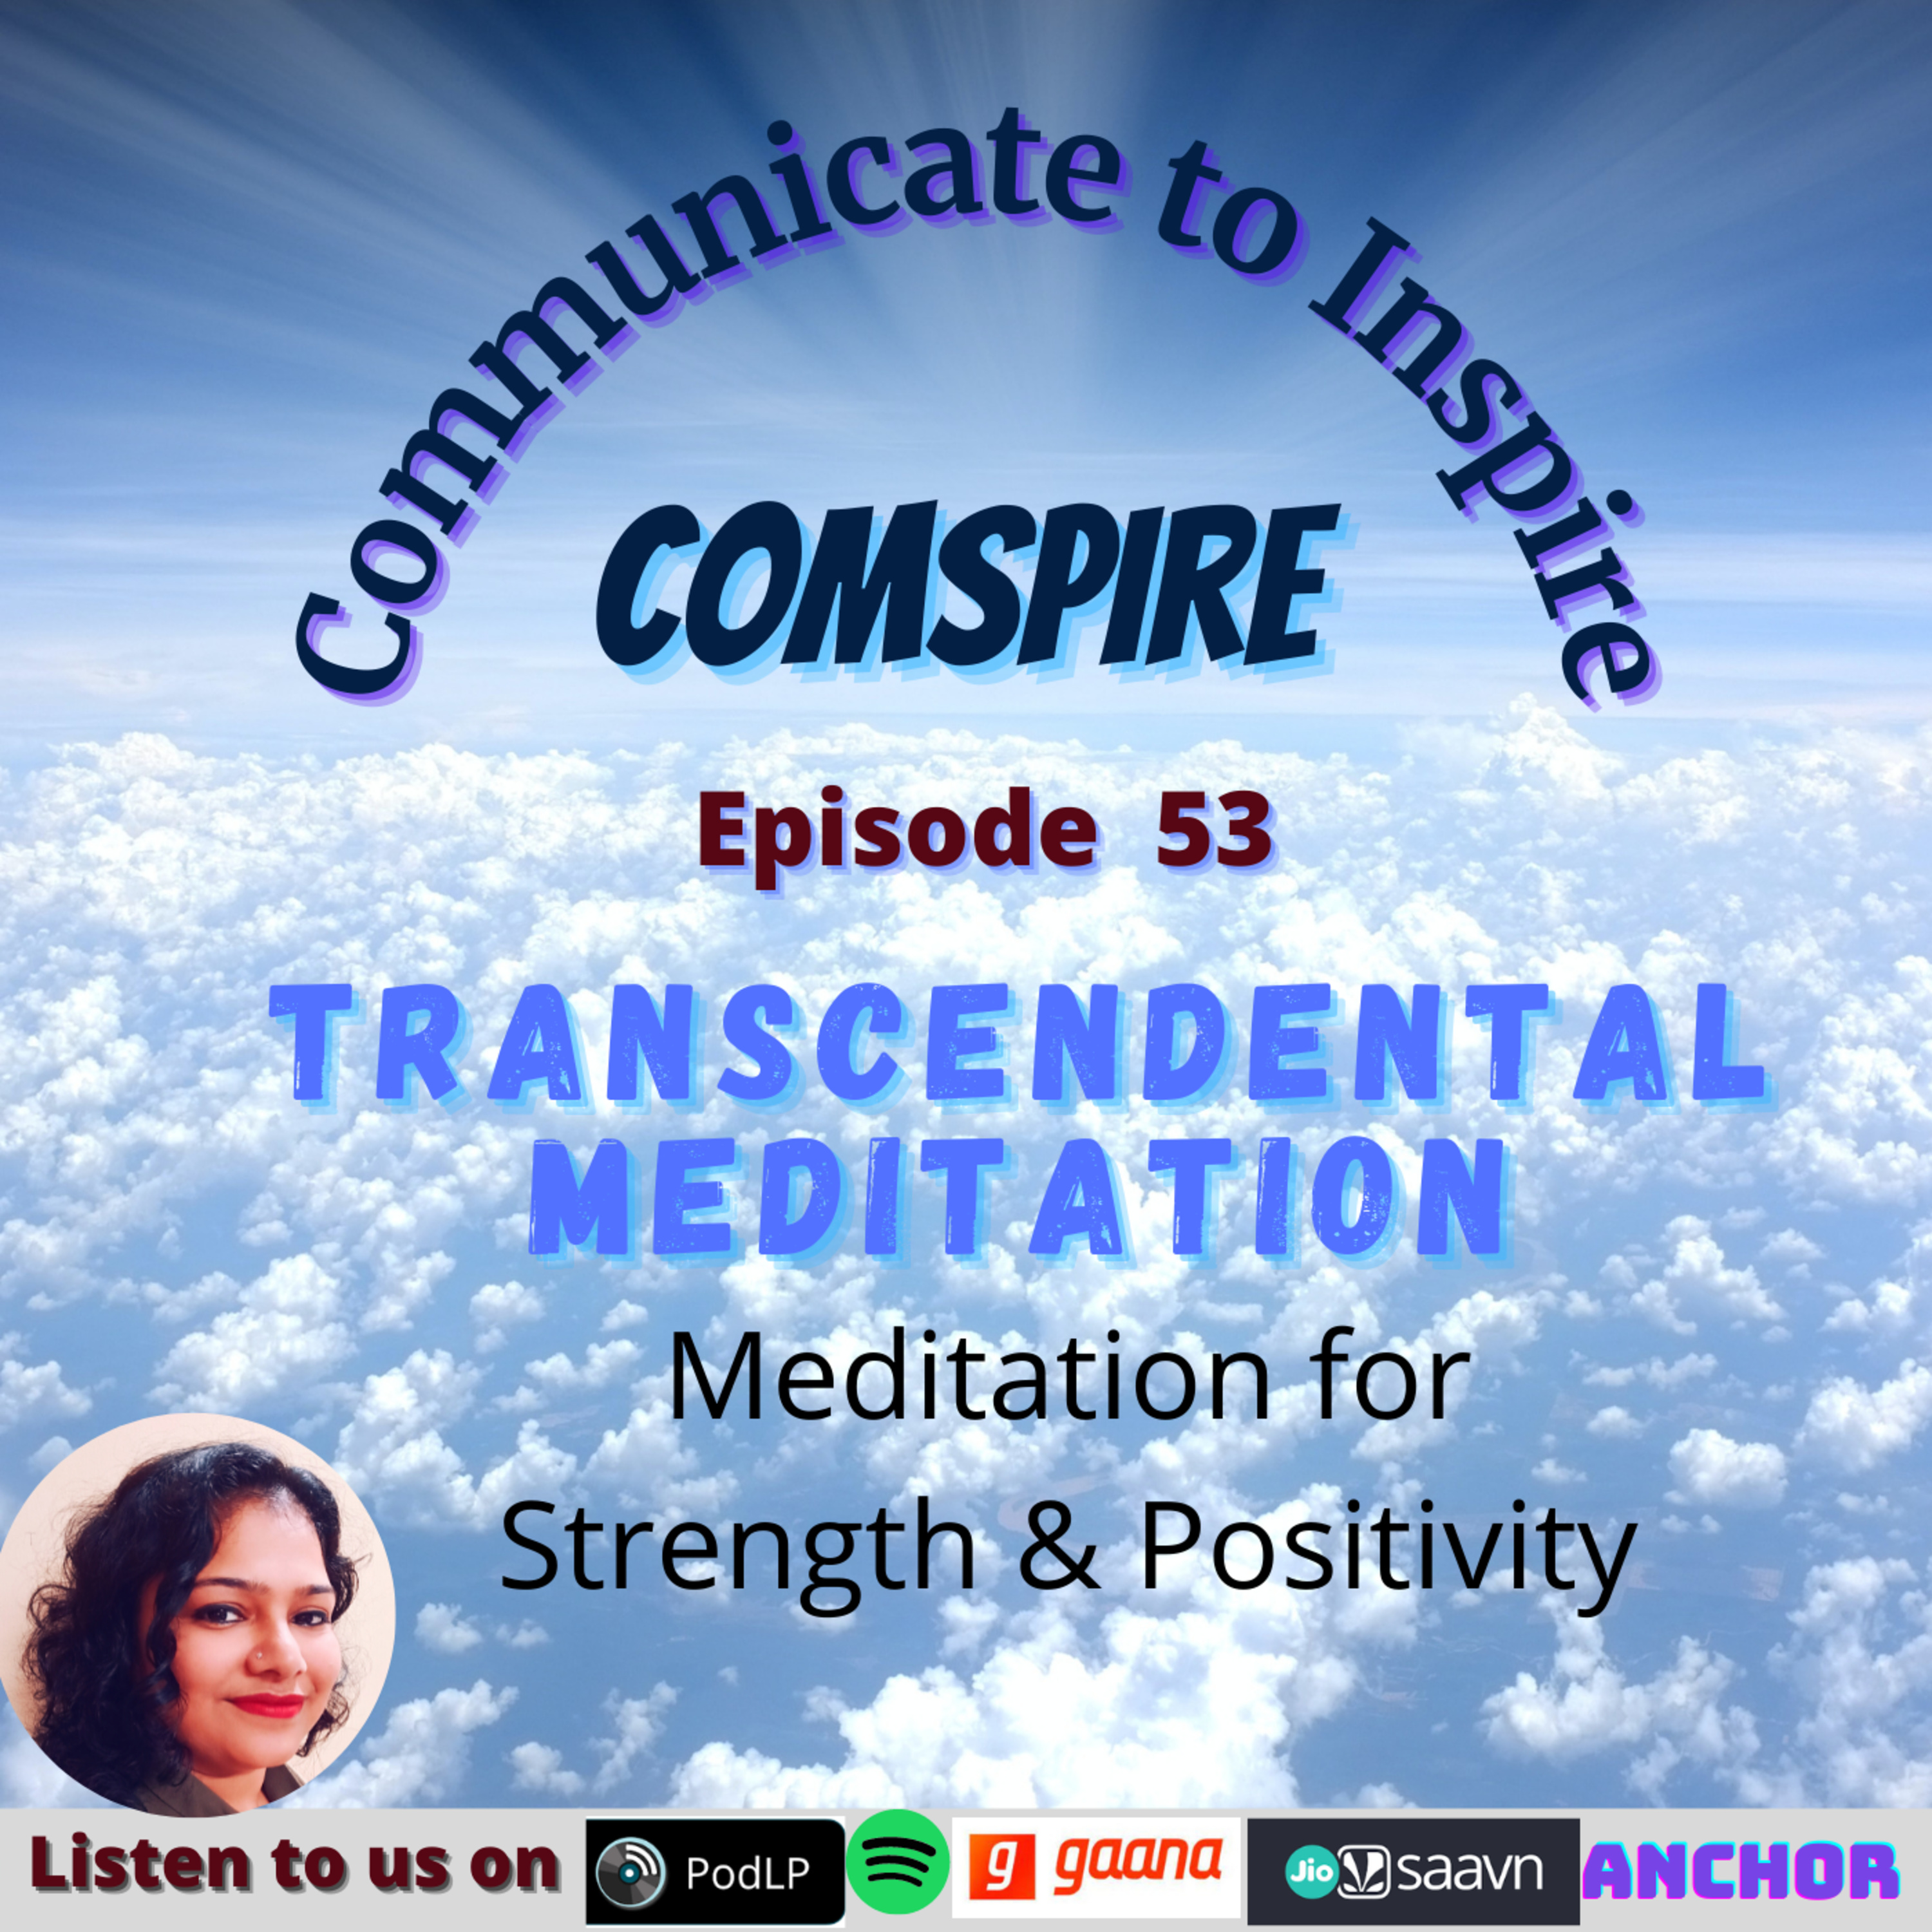 Episode 53: Transcendental Meditation and Mindfulness